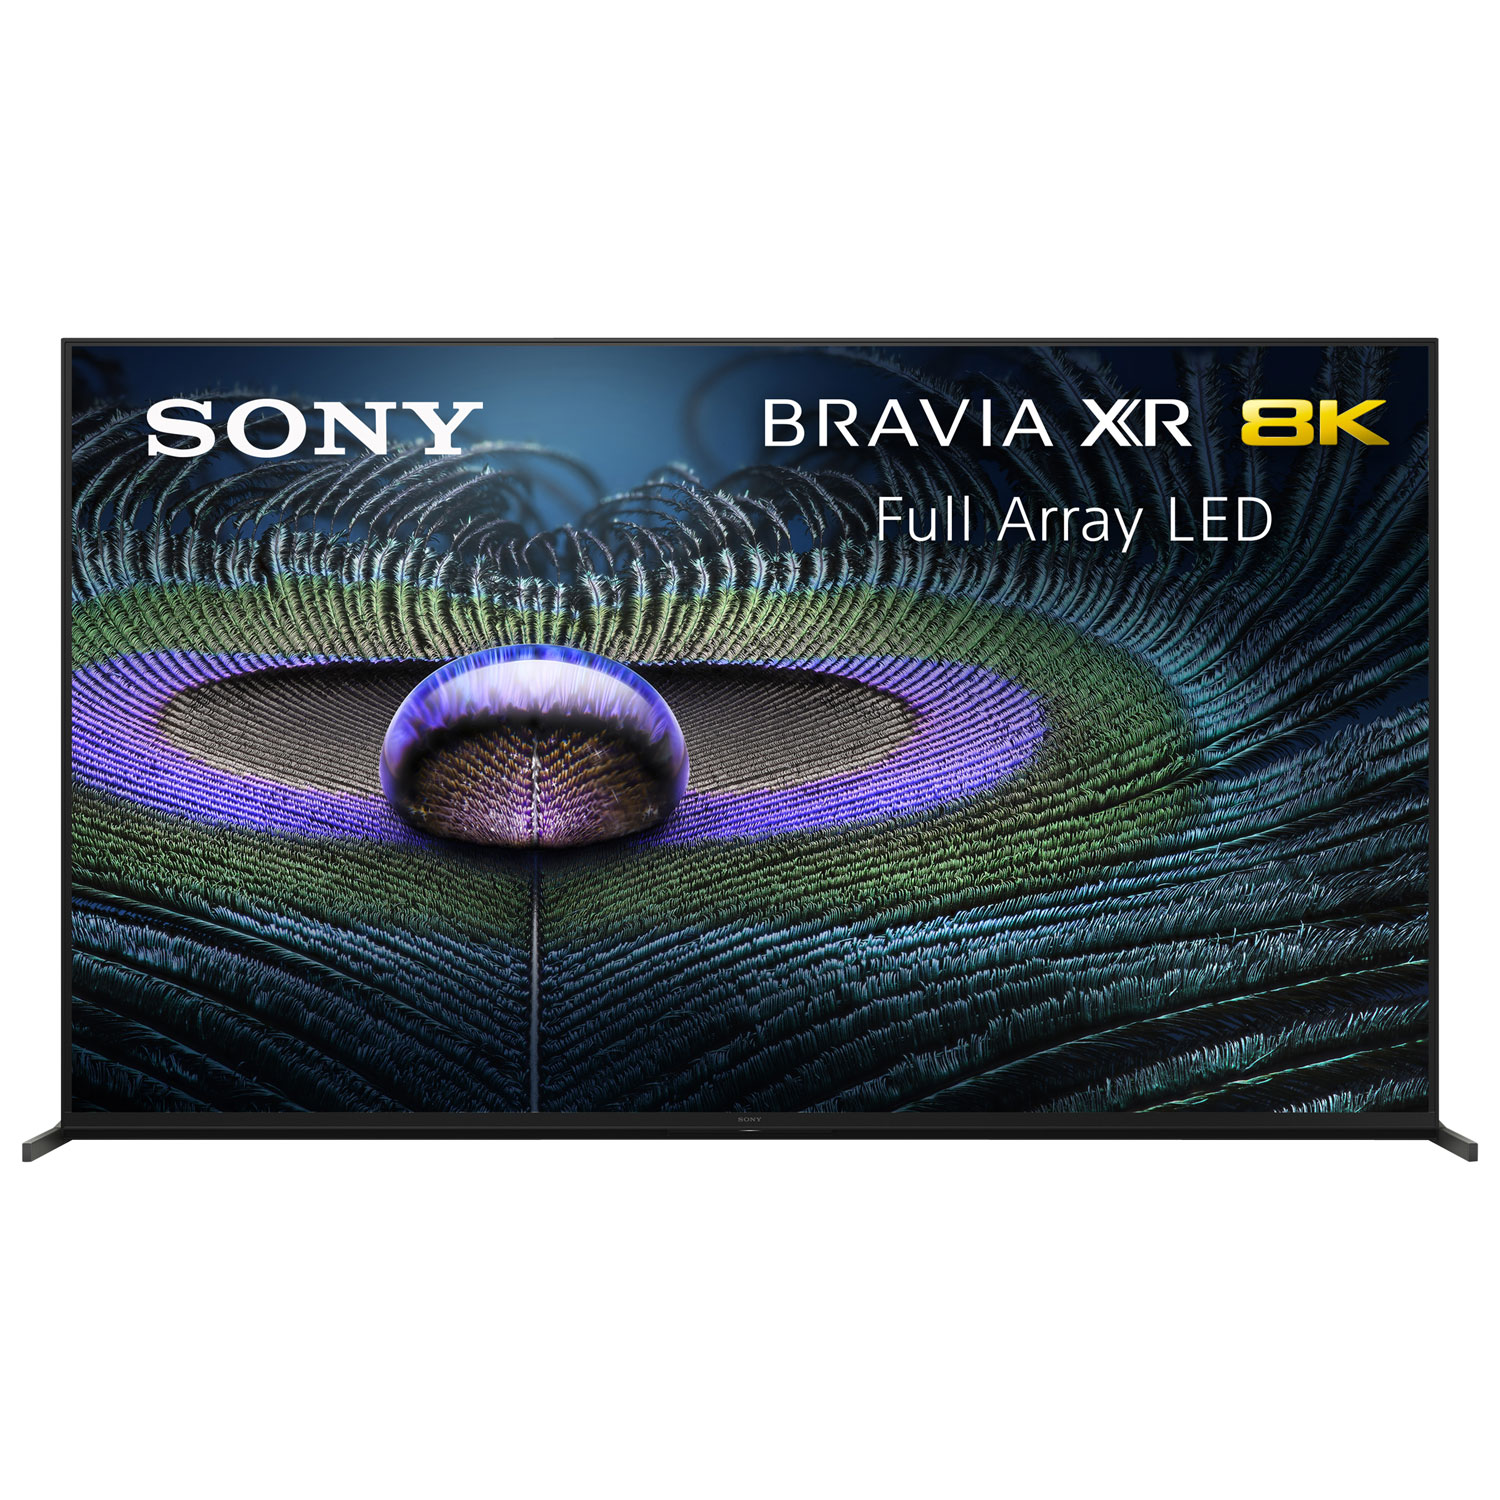 Sony BRAVIA XR Z9J 75" 8K UHD HDR LED Smart Google TV (XR75Z9J) - 2021